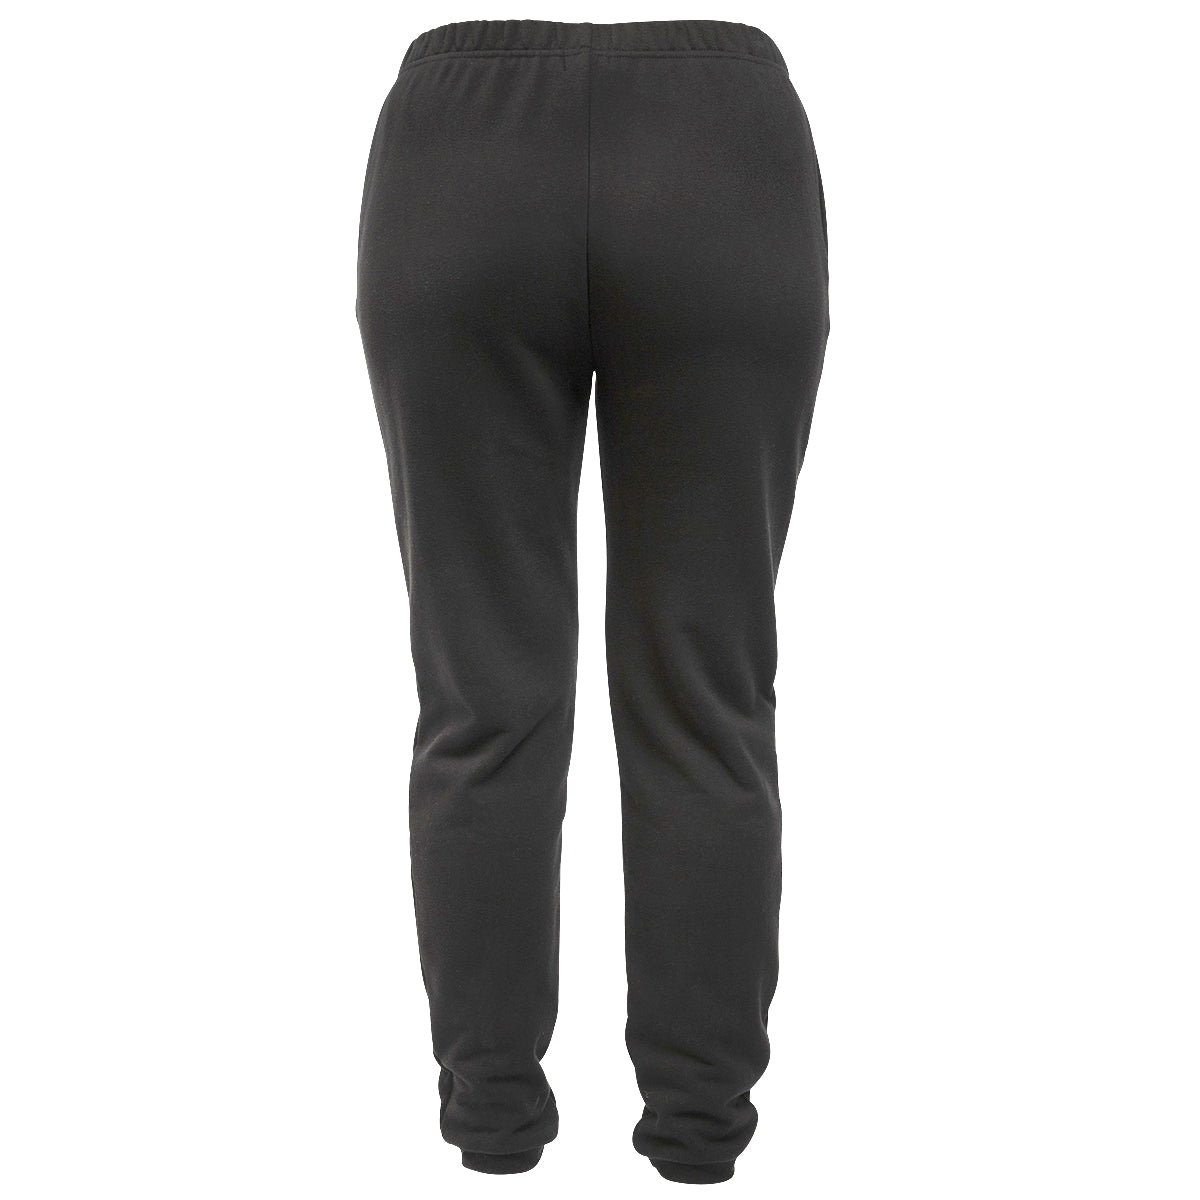 Phoenix Fleece Women's Pant - Black